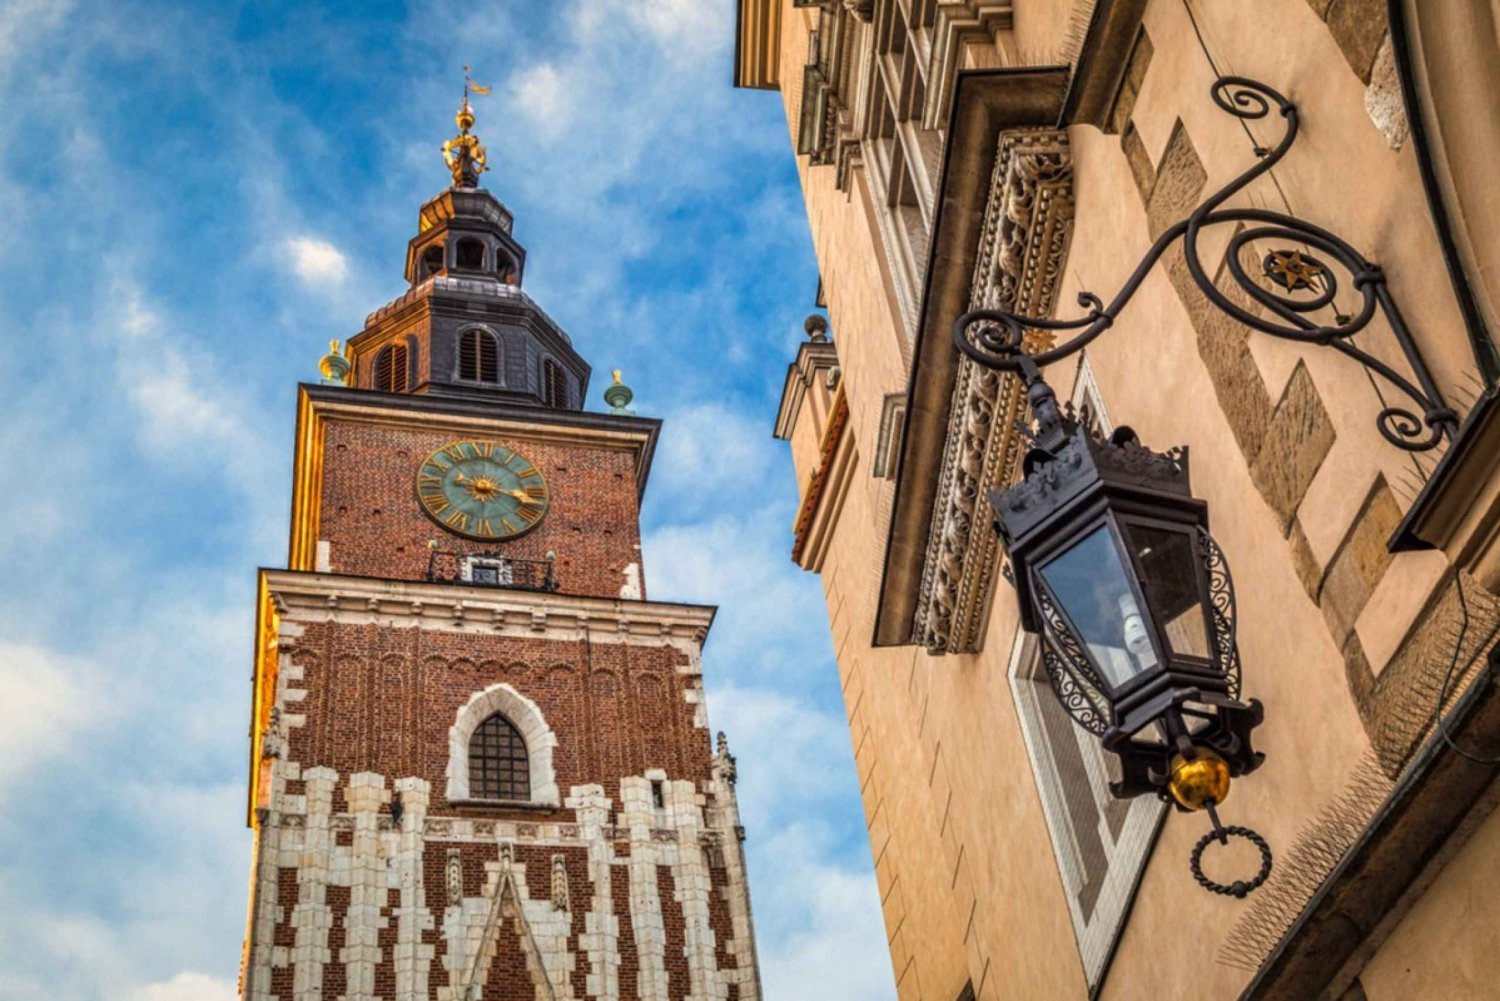 Krakova: Historiallinen vanhankaupungin kaupunki tutkimusmatkailu peli